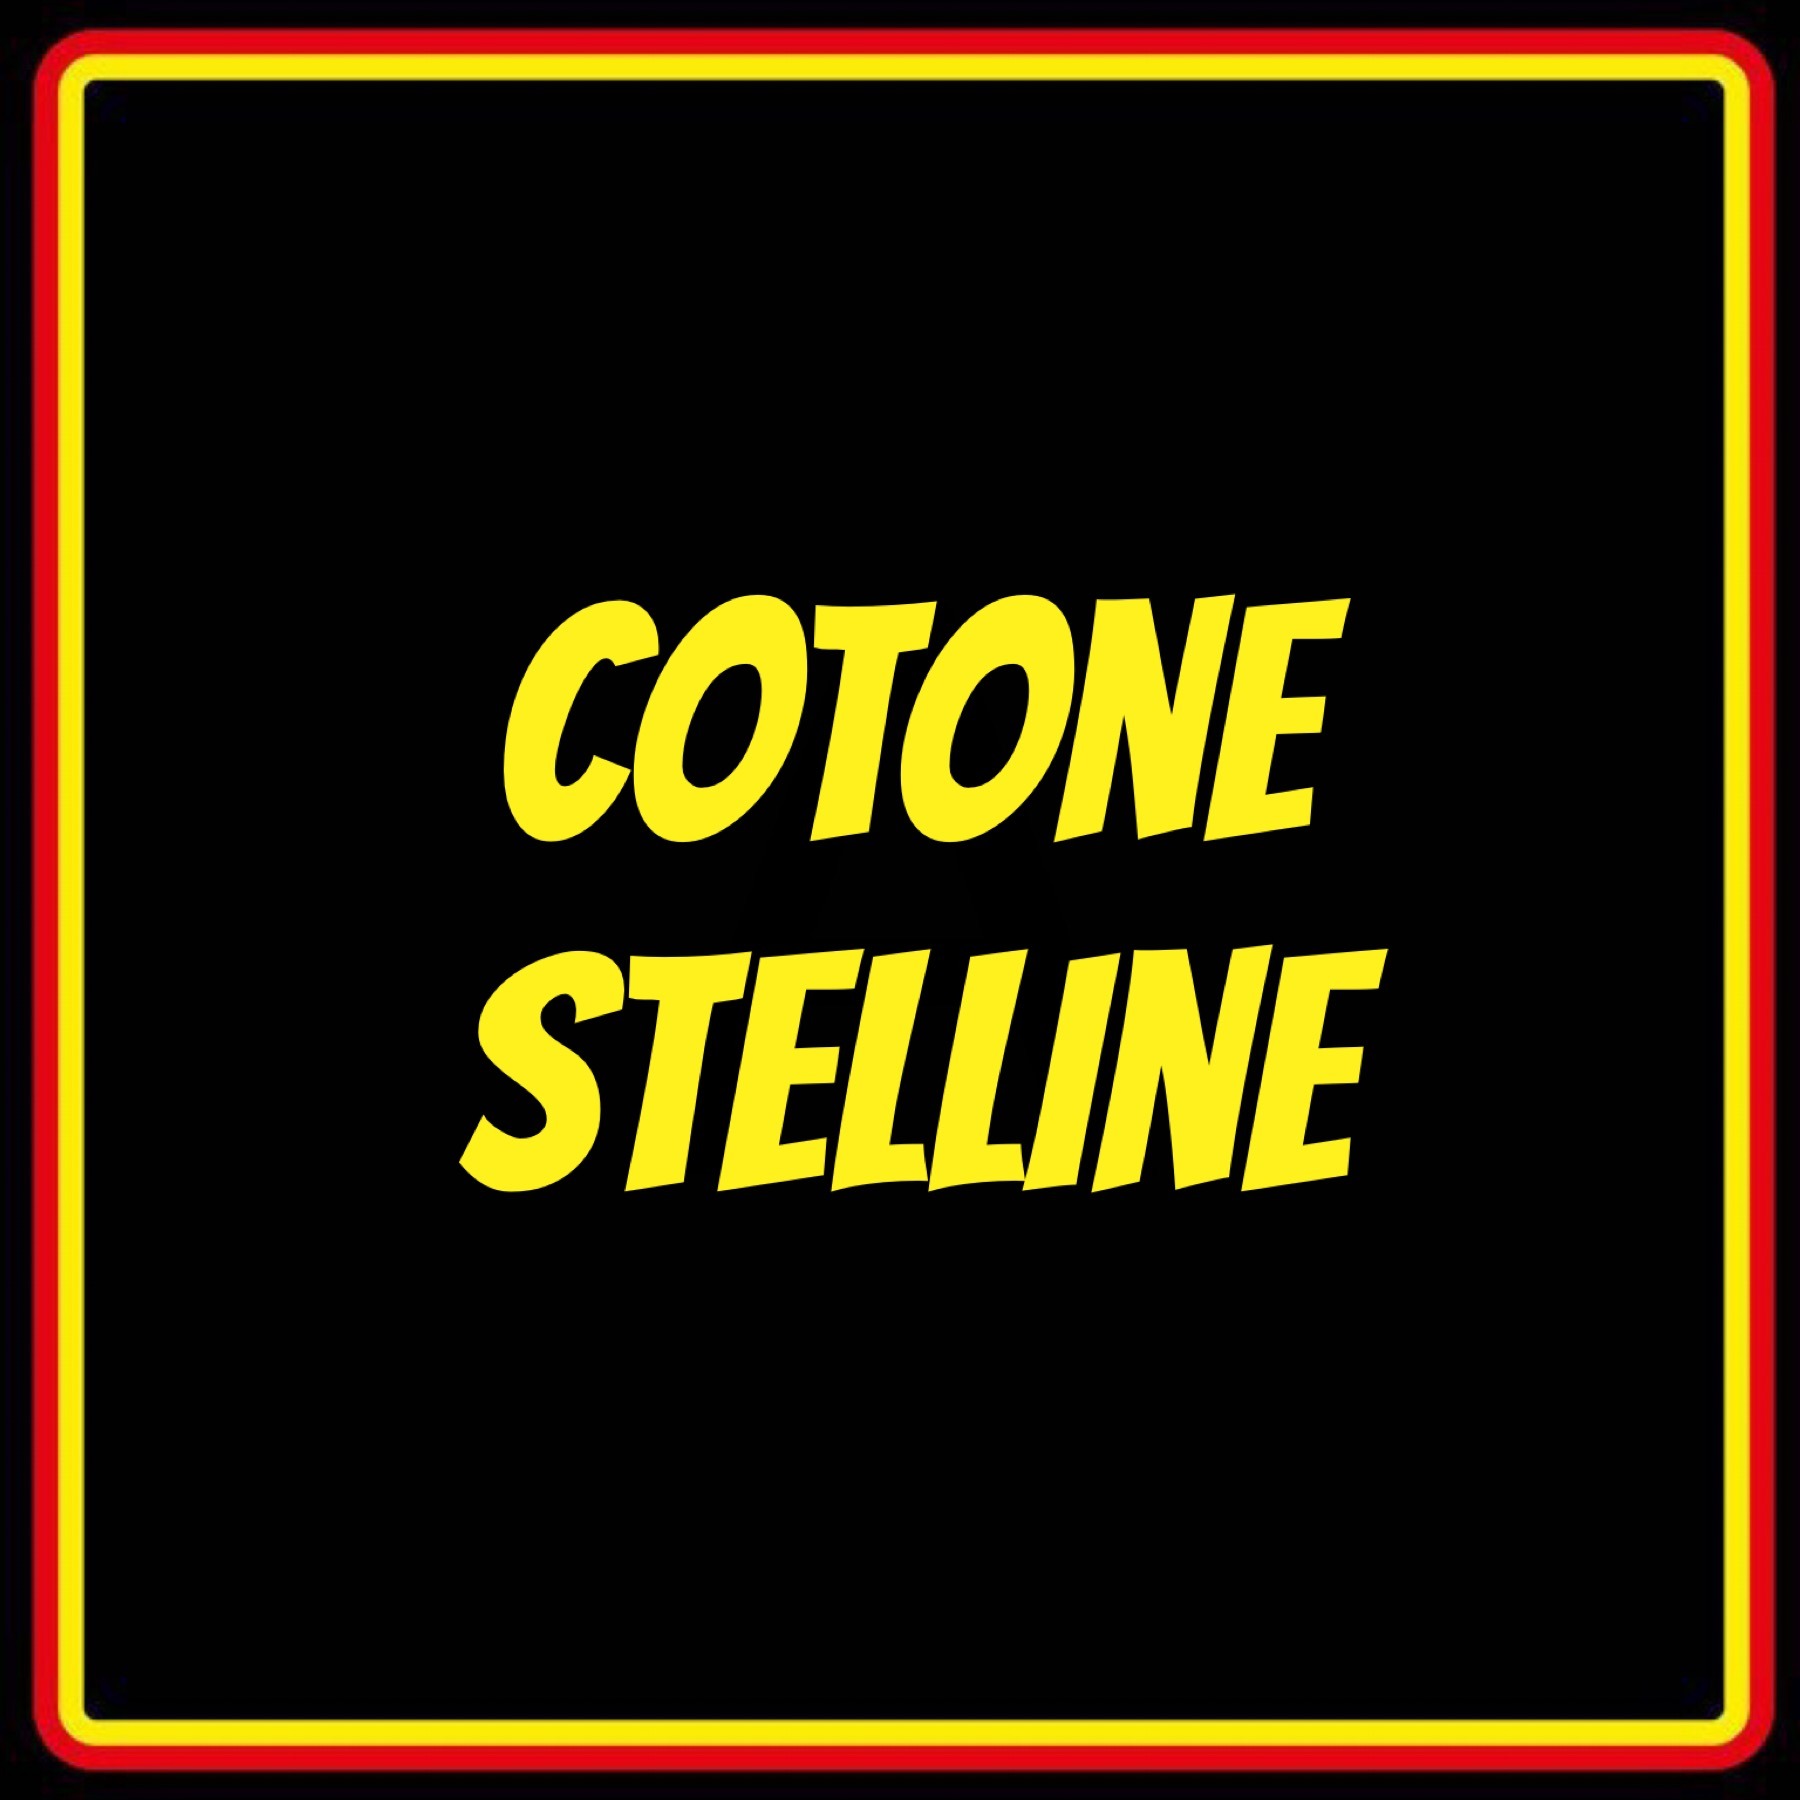 COTONE STELLINE